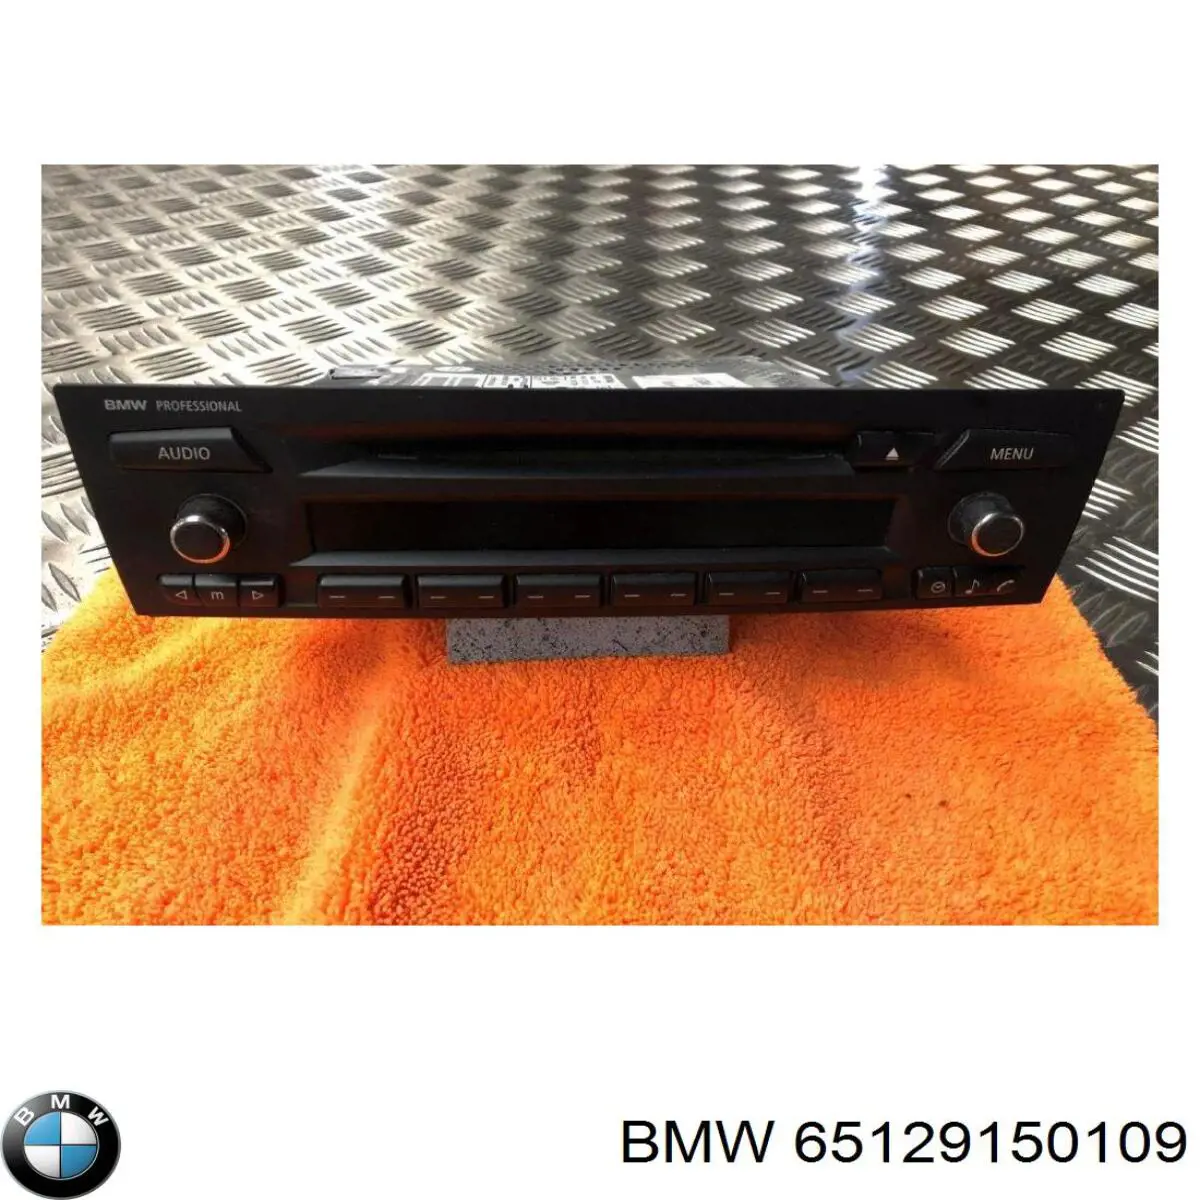 65129110678 BMW radio (radio am/fm)